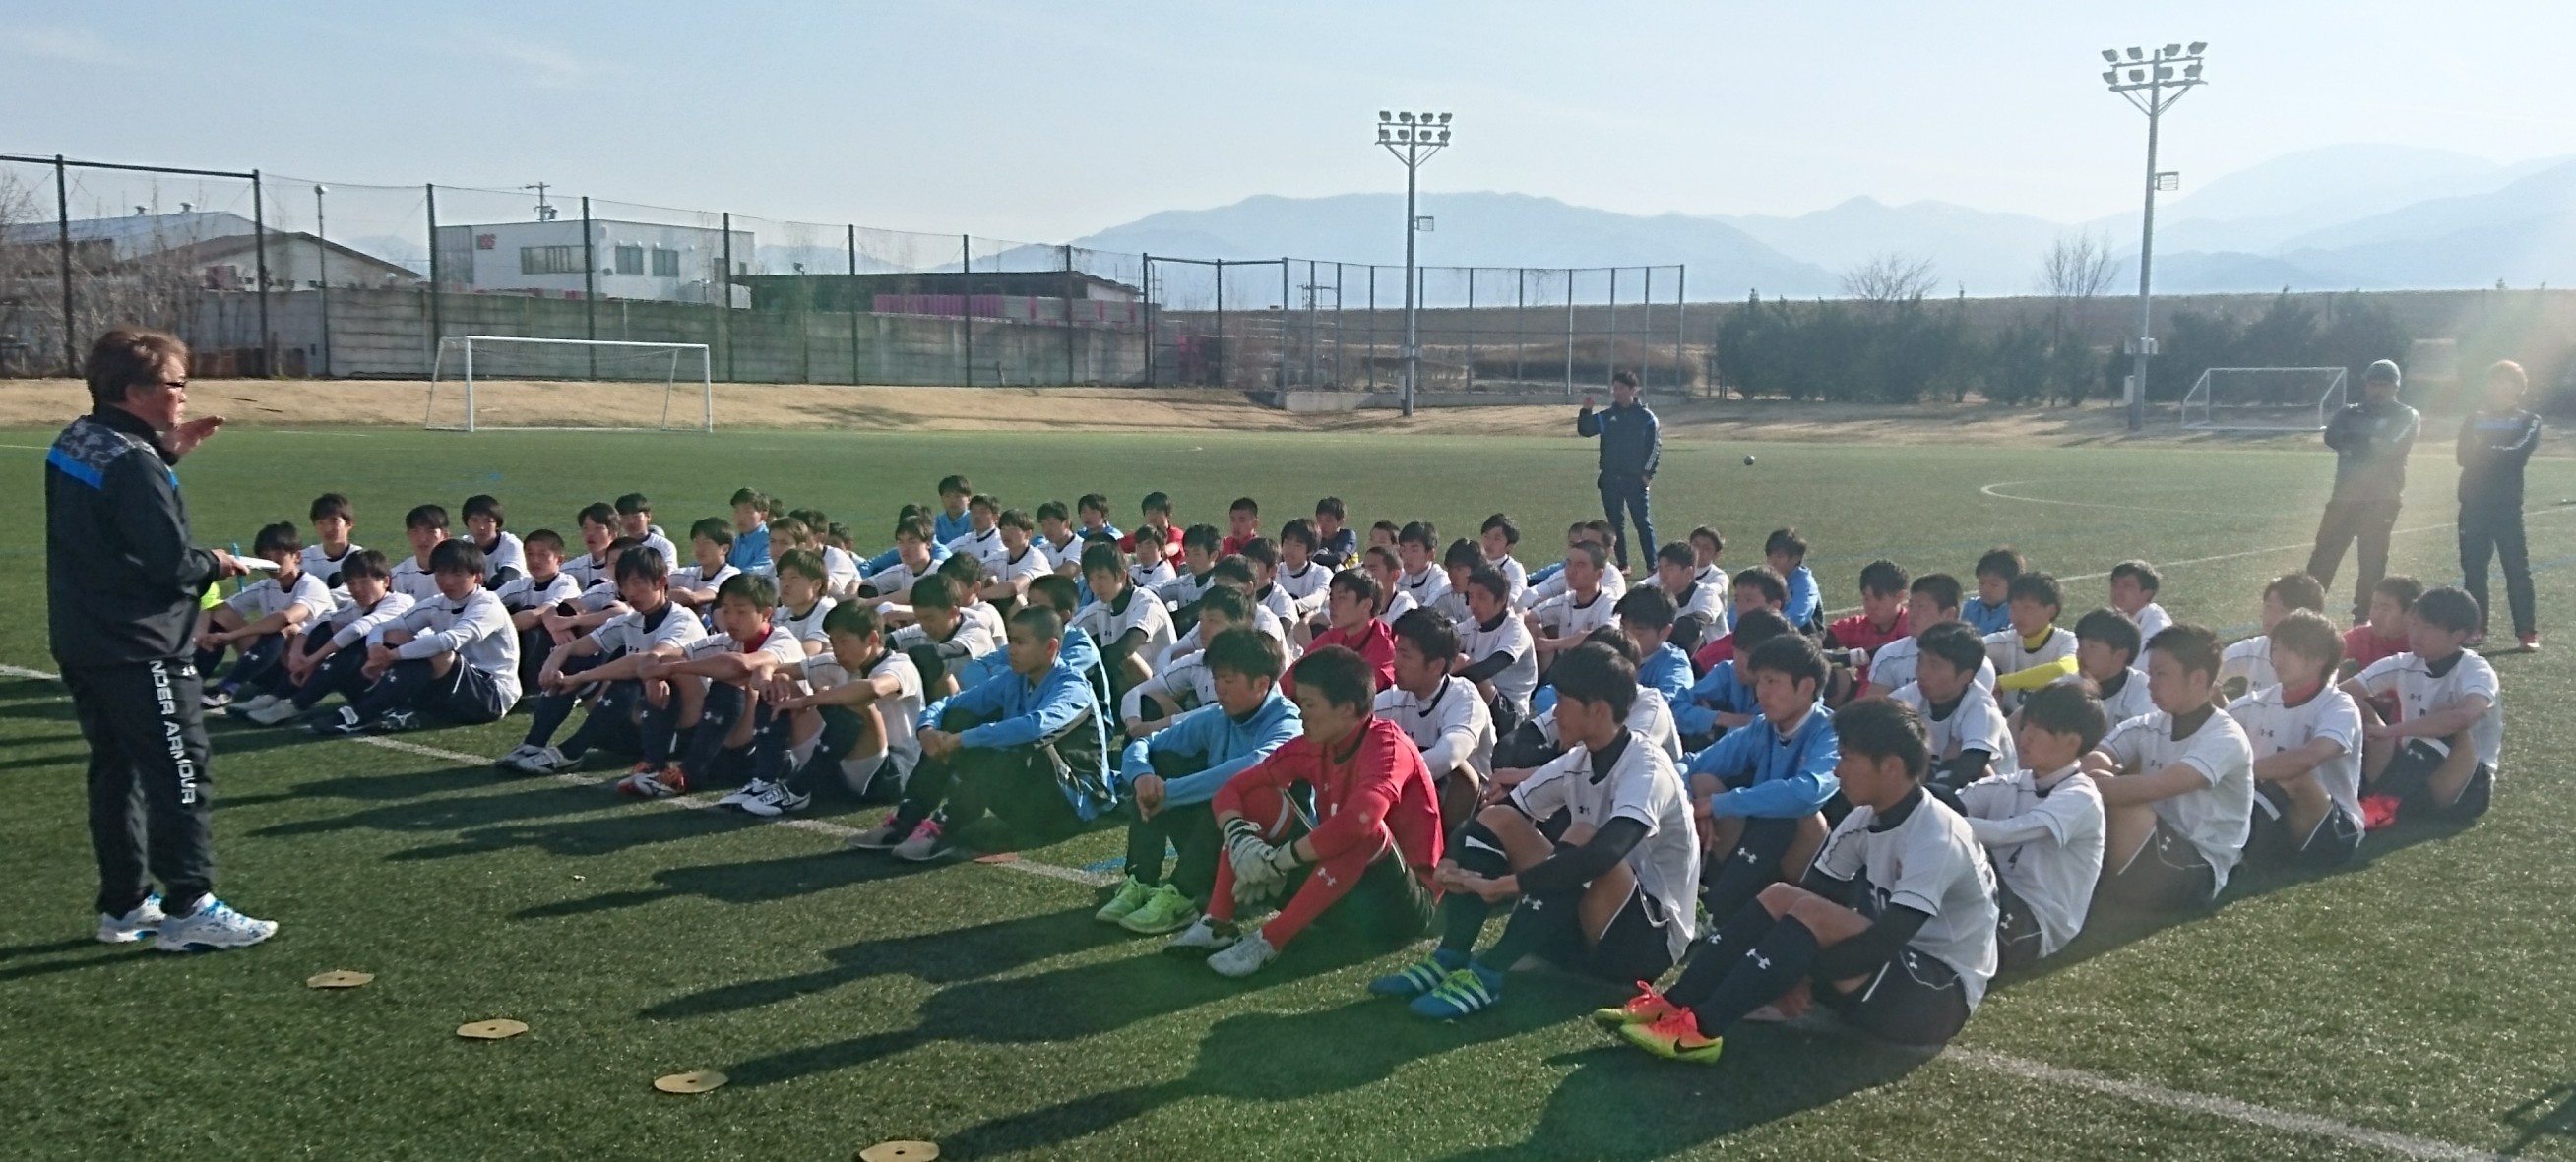 松本国際高等学校 サッカー部 新年度 スタートミーティング